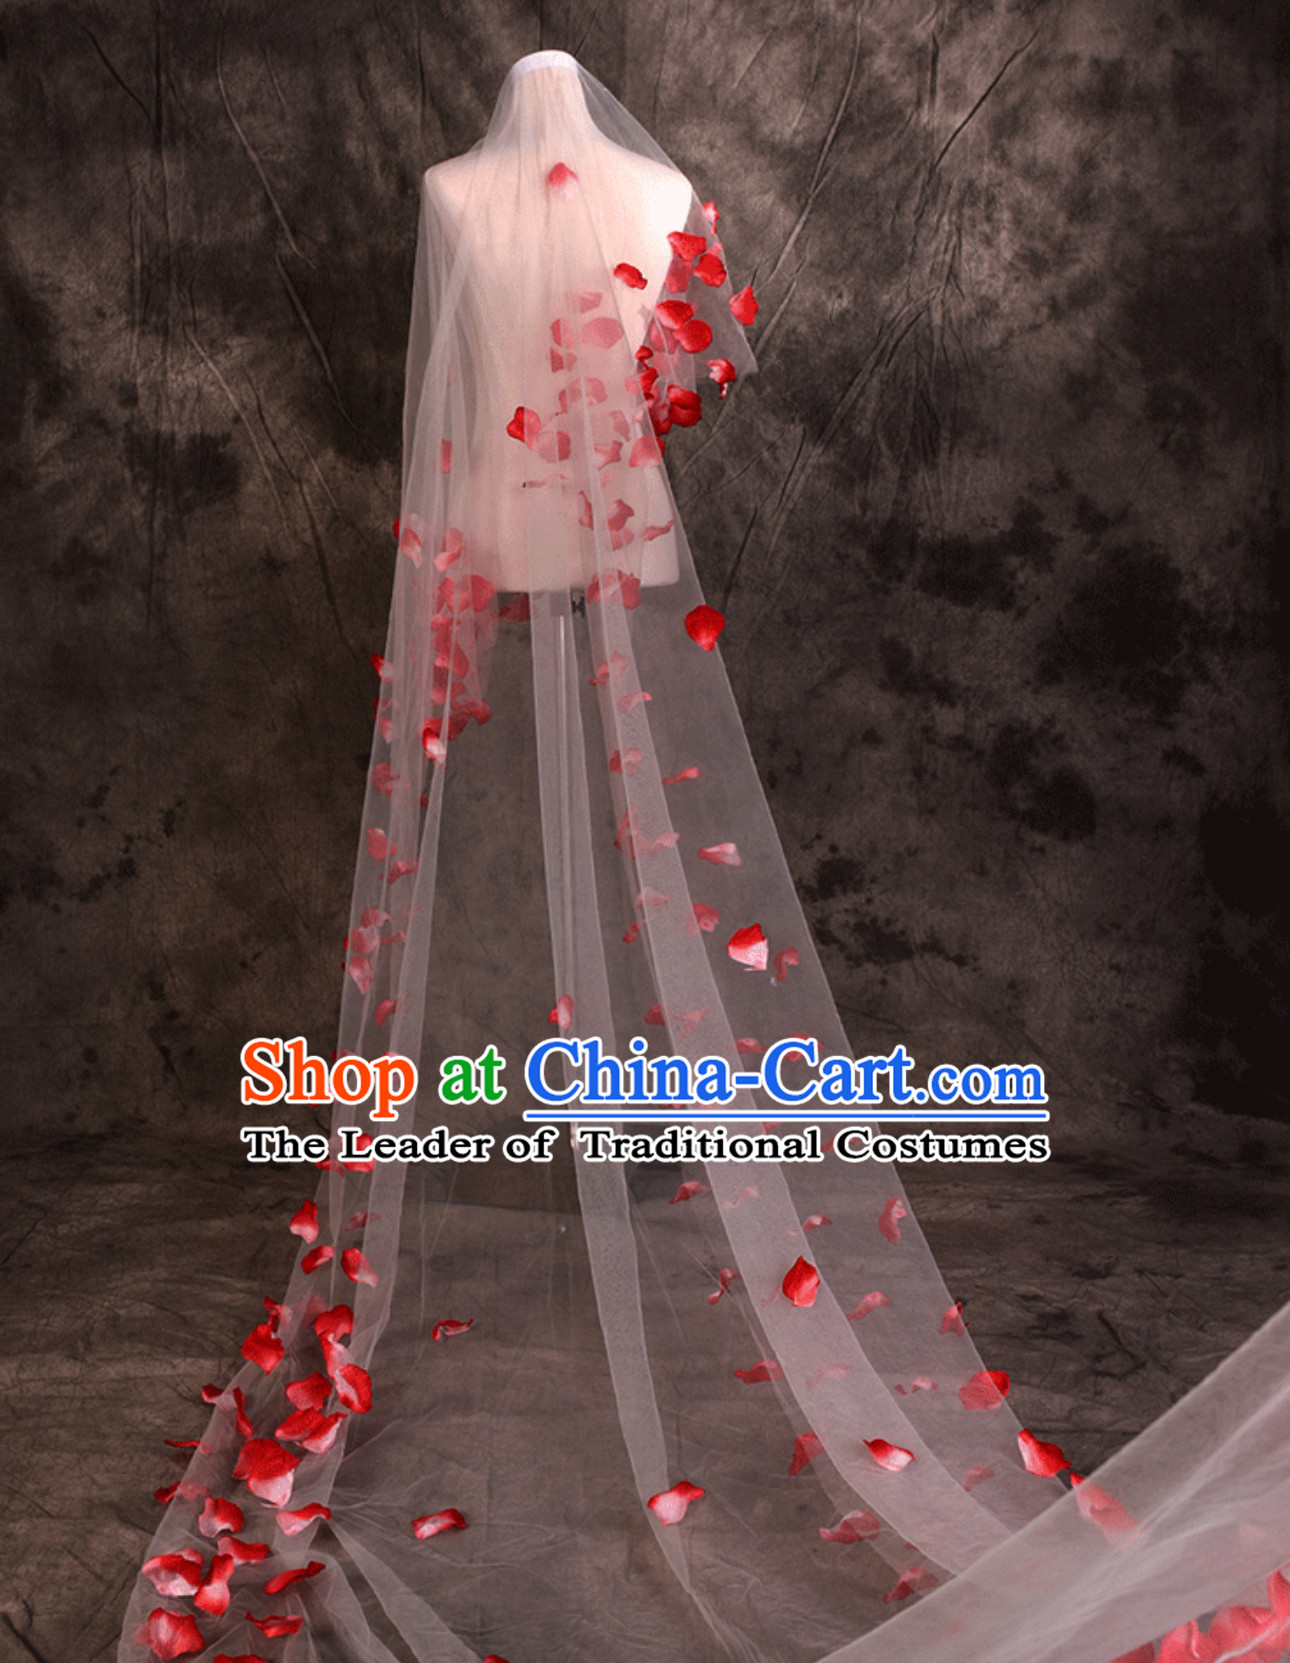 1.75 Meters Long Romantic Flower Petal Wedding Veil